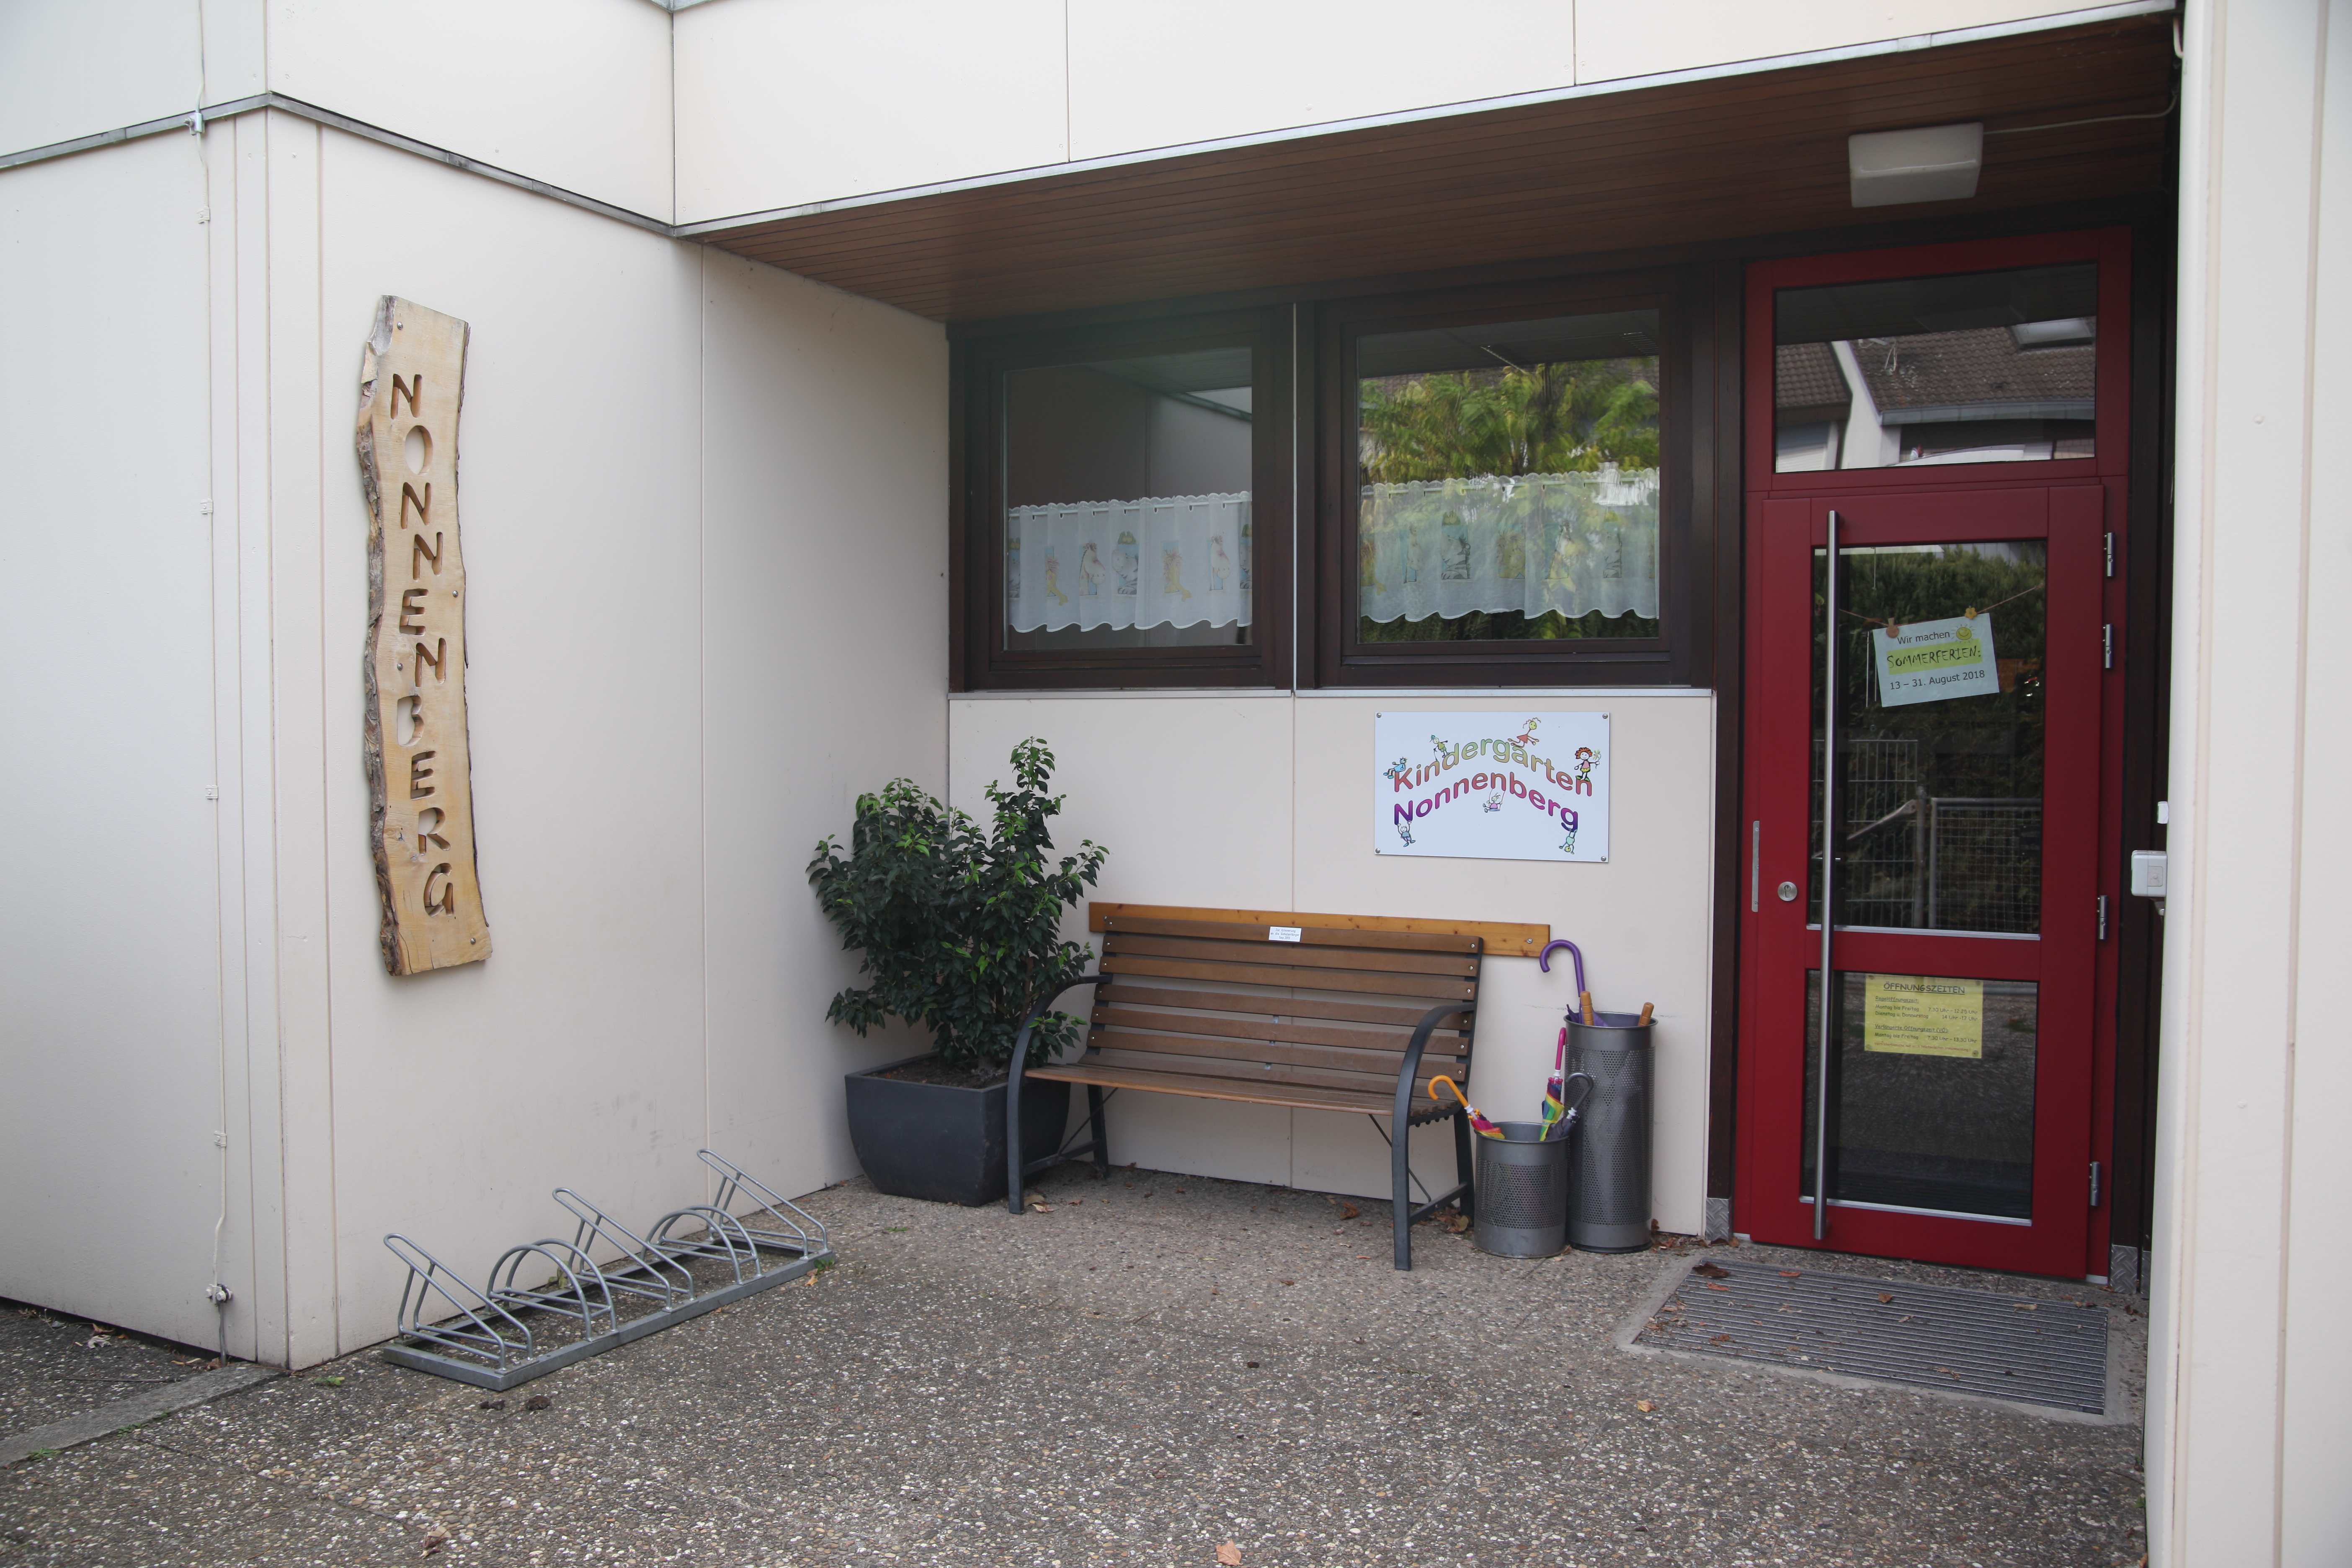                                                     Foto: Eingangsbereich des Kindergarten Nonnenberg                                    